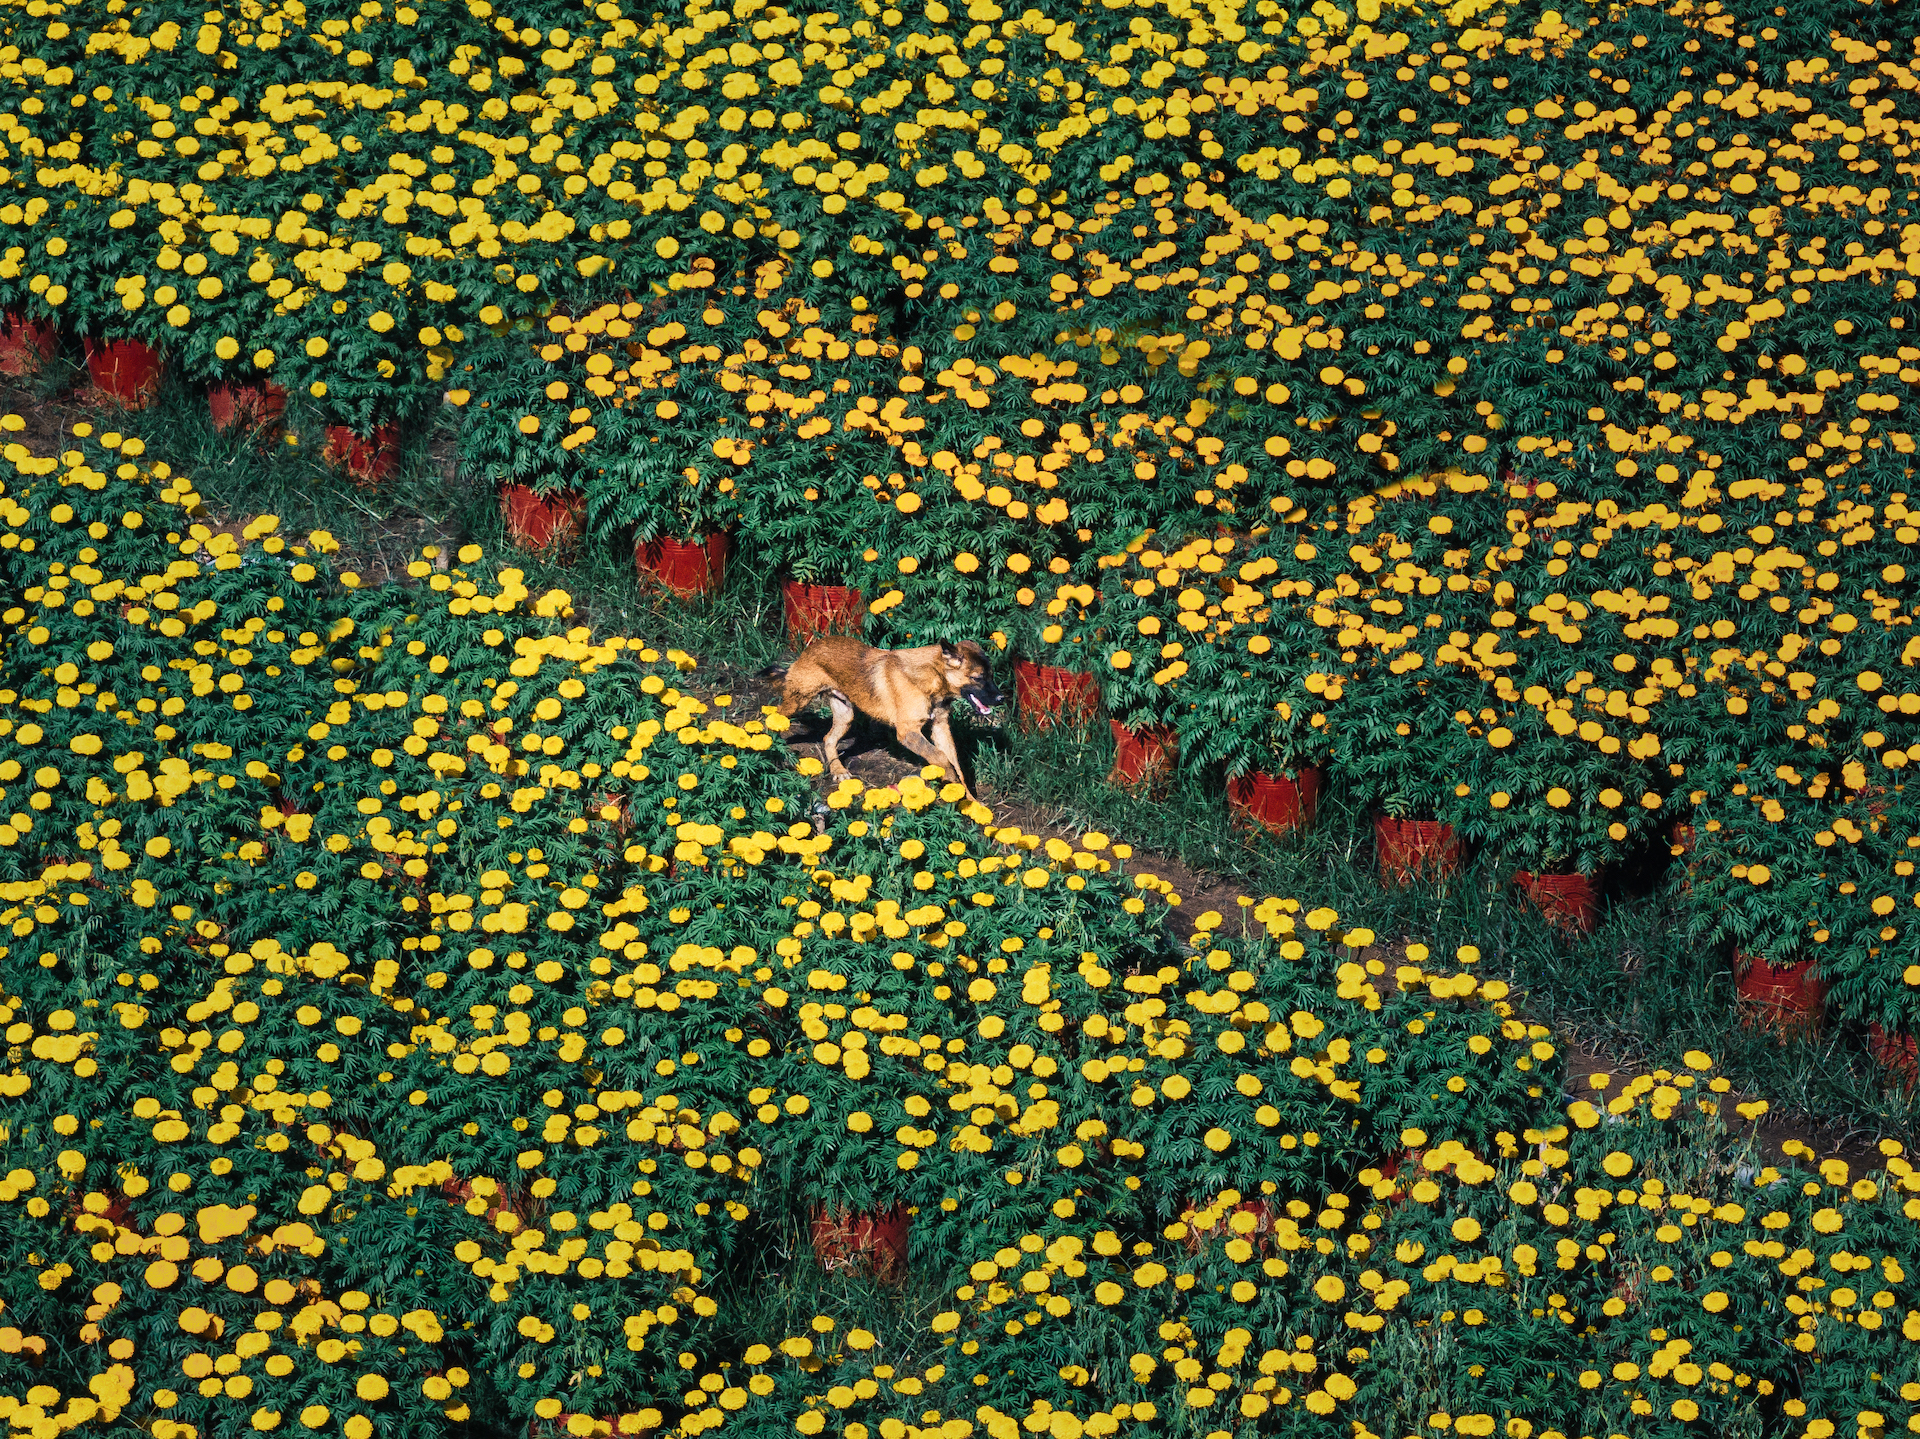 A dog walks on a field of Tet flowers in the southern region of Vietnam. Photo: Jet Anthony De La Cruz